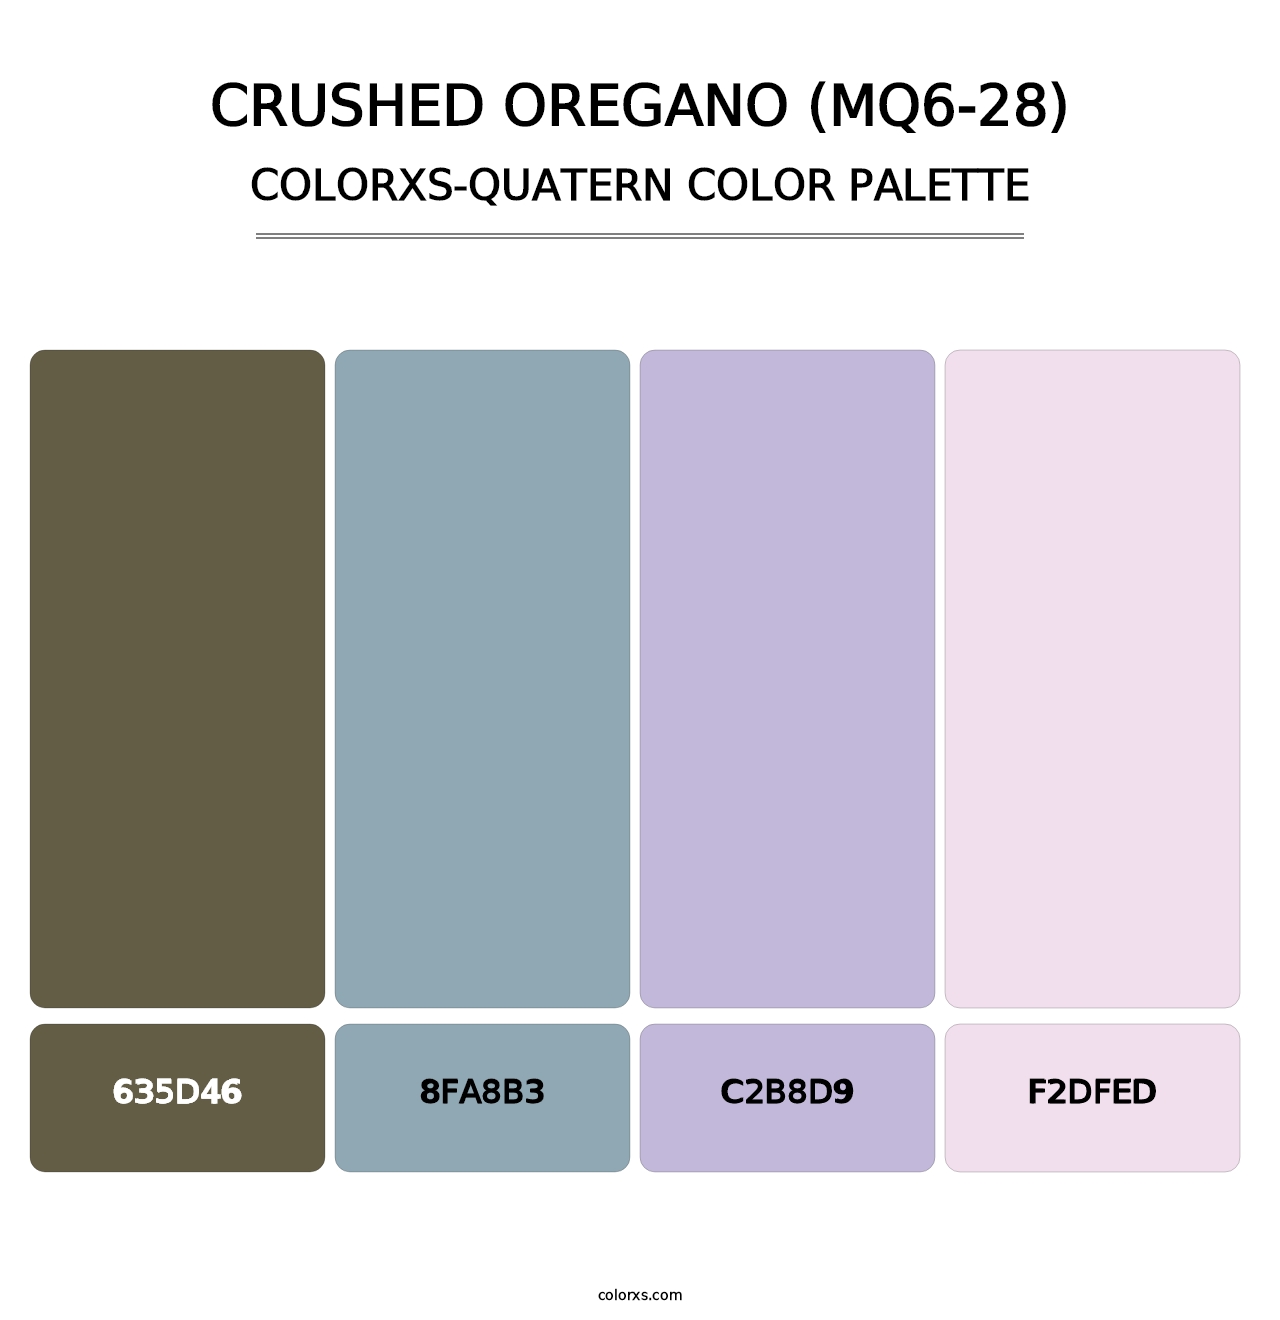 Crushed Oregano (MQ6-28) - Colorxs Quatern Palette